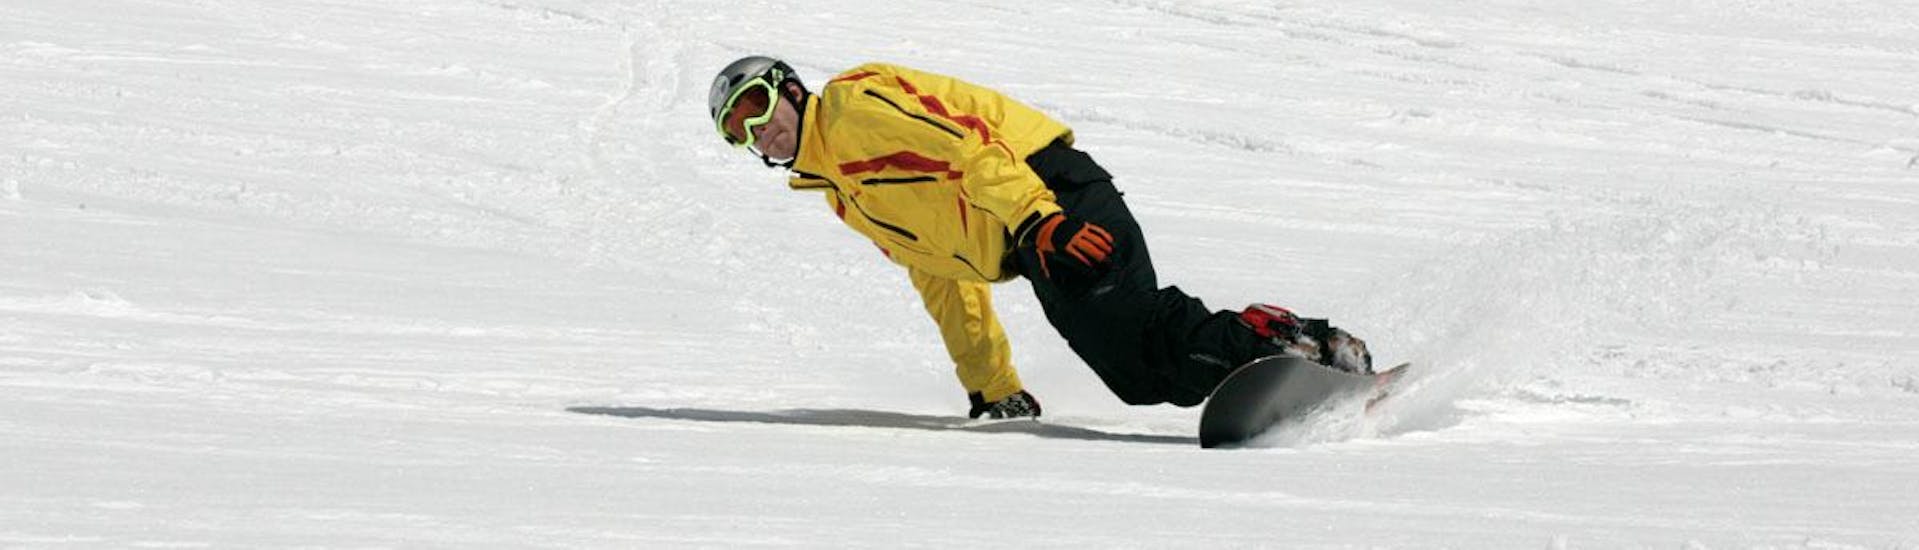 Cours de snowboard - Premier cours.